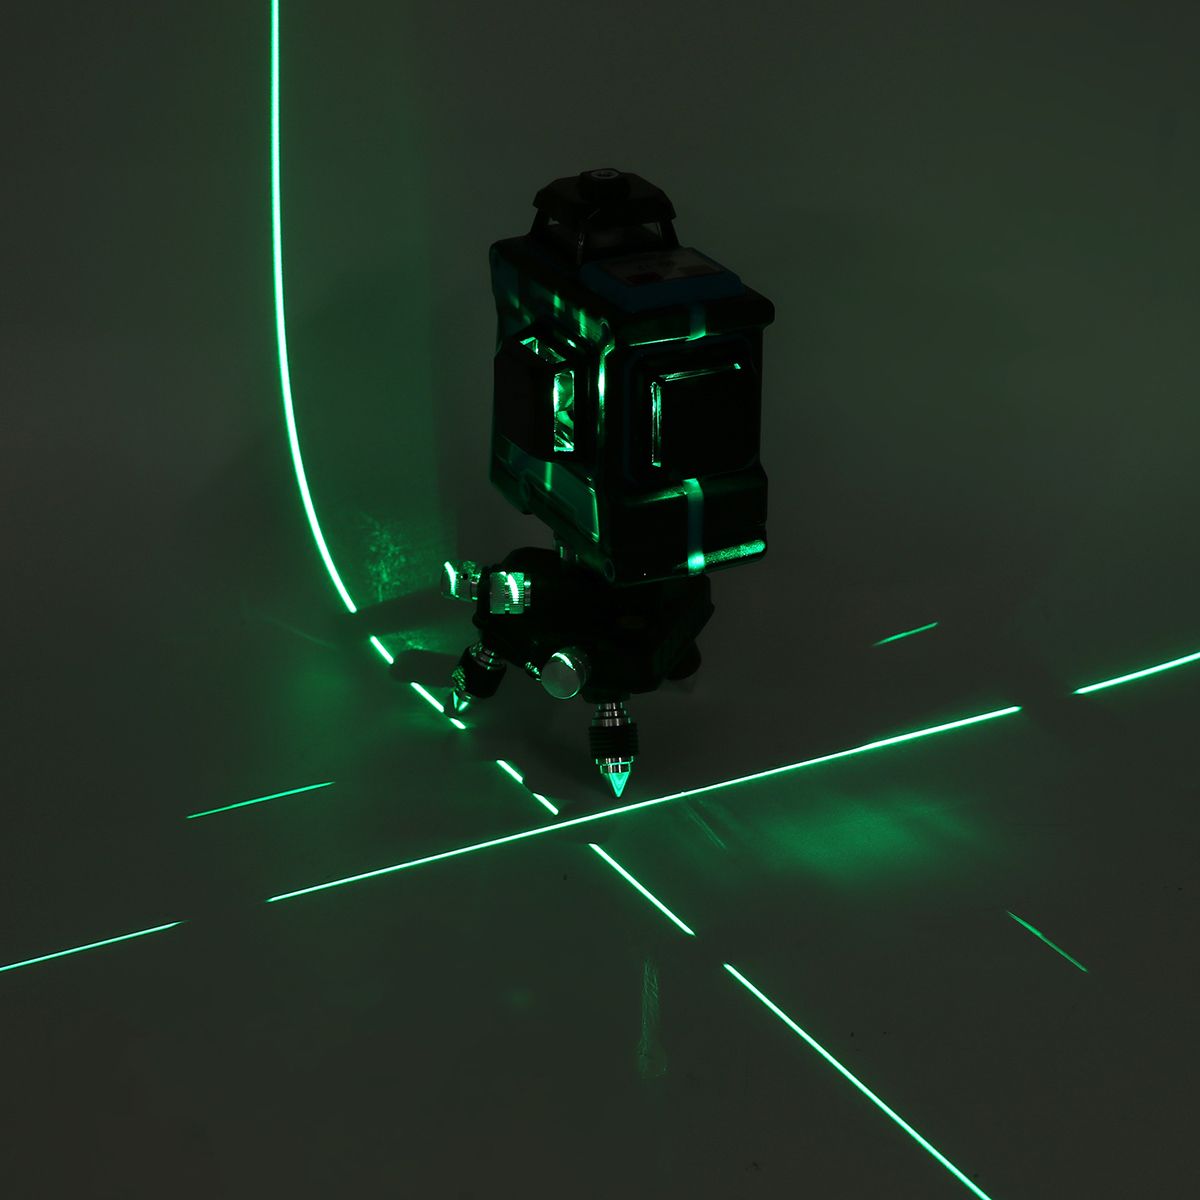 360deg-Rotary-3D-Green-Laser-Level-12-Lines-Self-Leveling-Cross-Measure-Tool-Kit-1740235